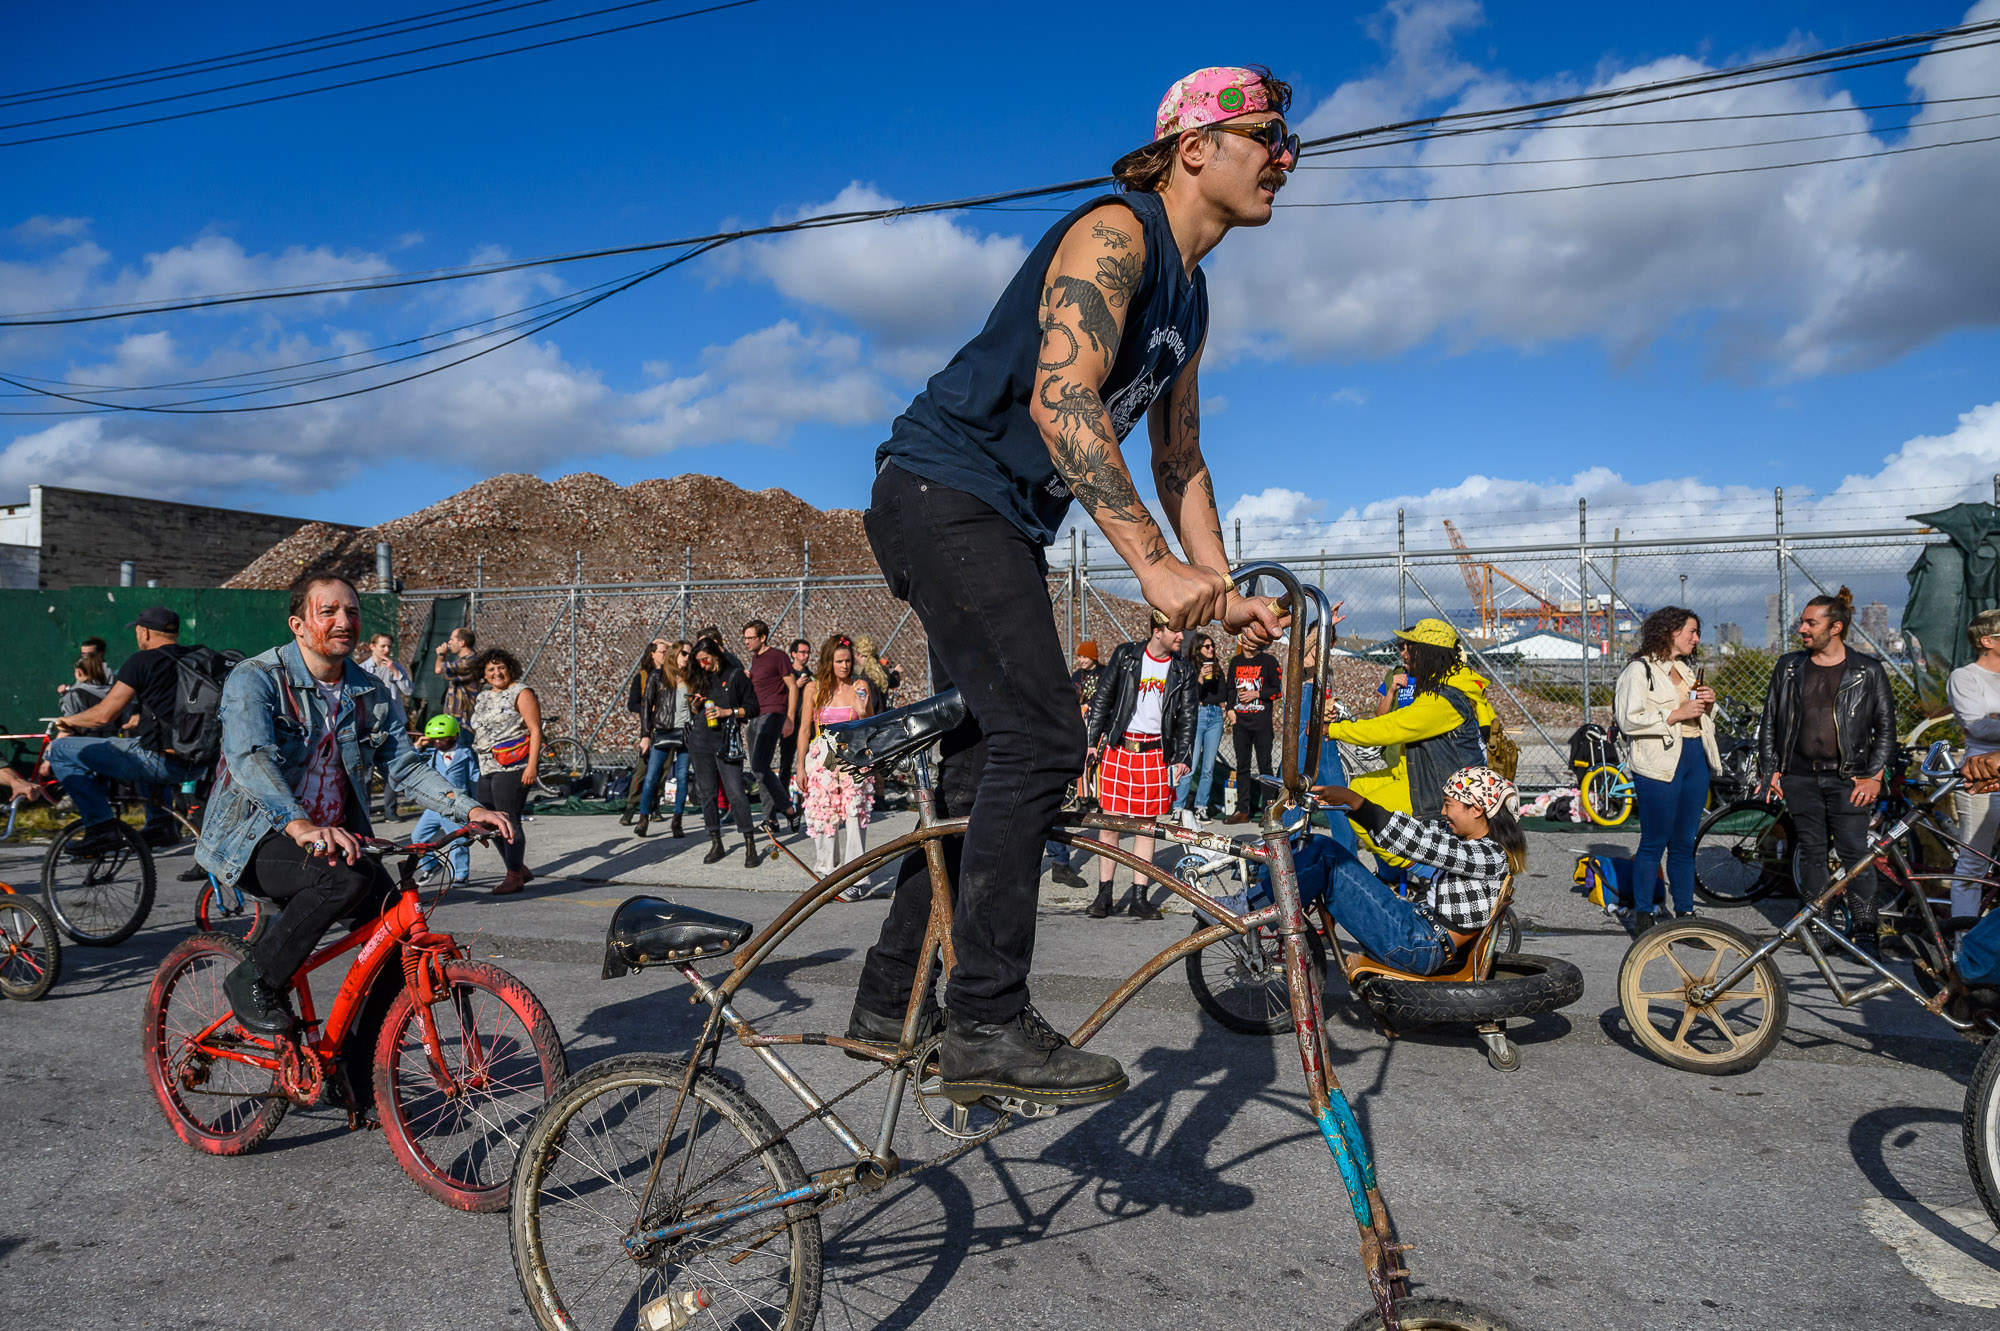 Festival Modifikasi Sepeda di New York, Lo Nggak Akan Lihat Modif Sepeda Normal!